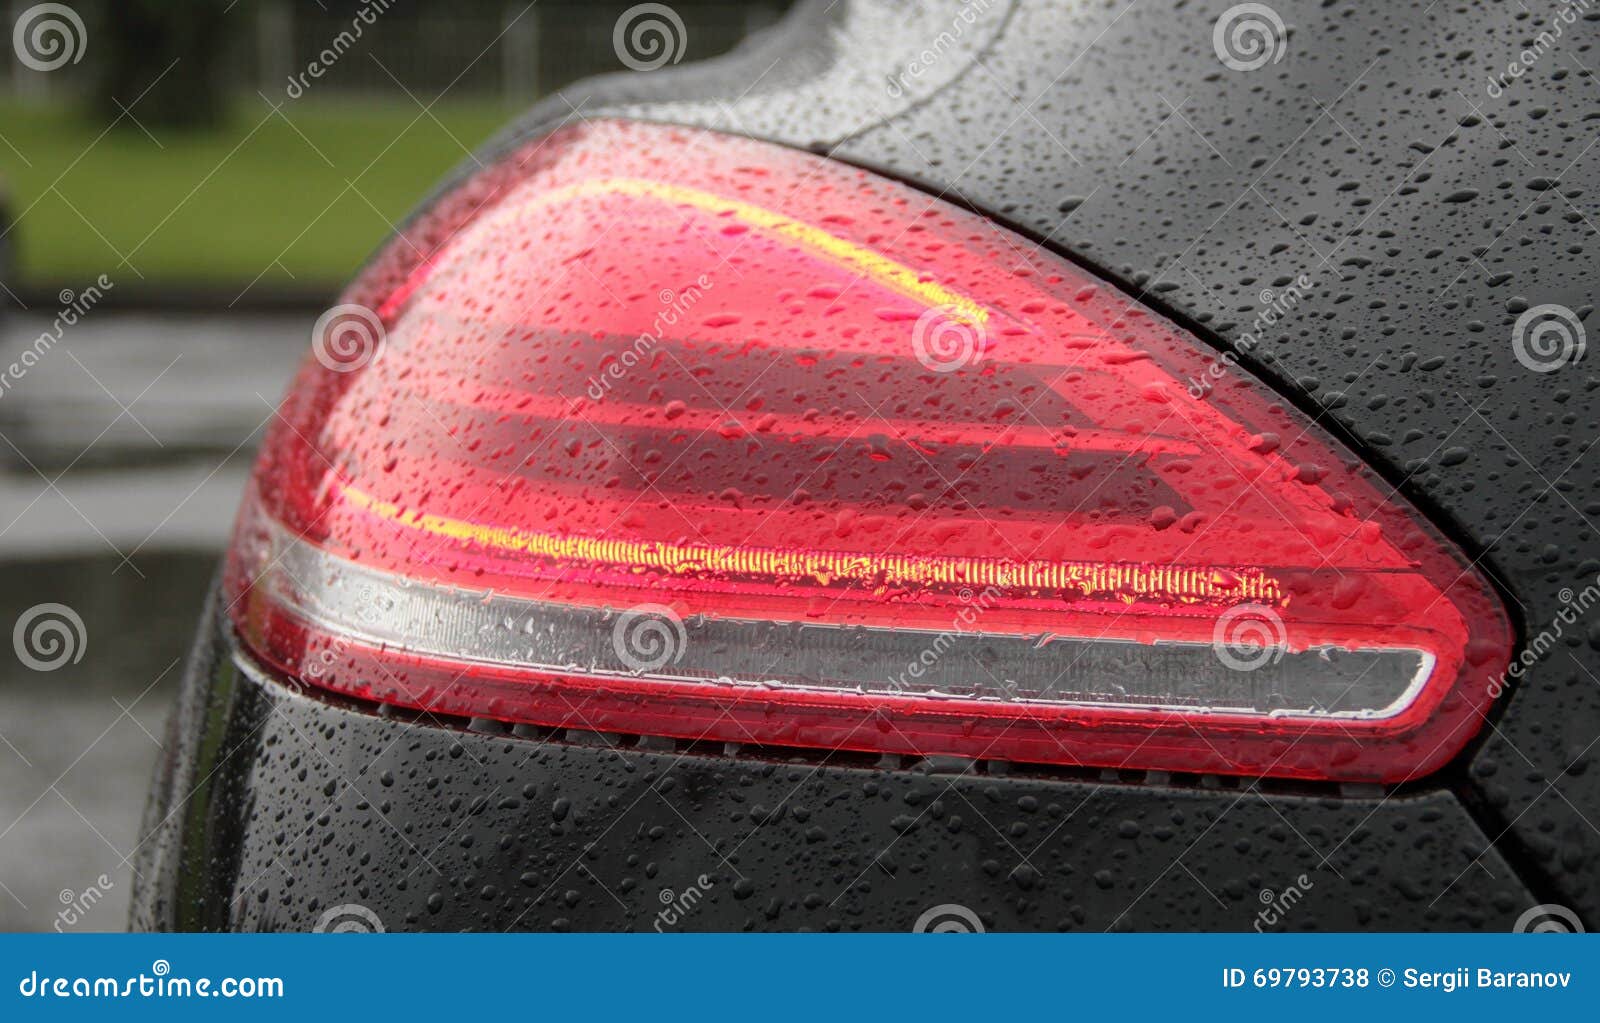 Water repellent car windshield - Stock Photo [73218752] - PIXTA